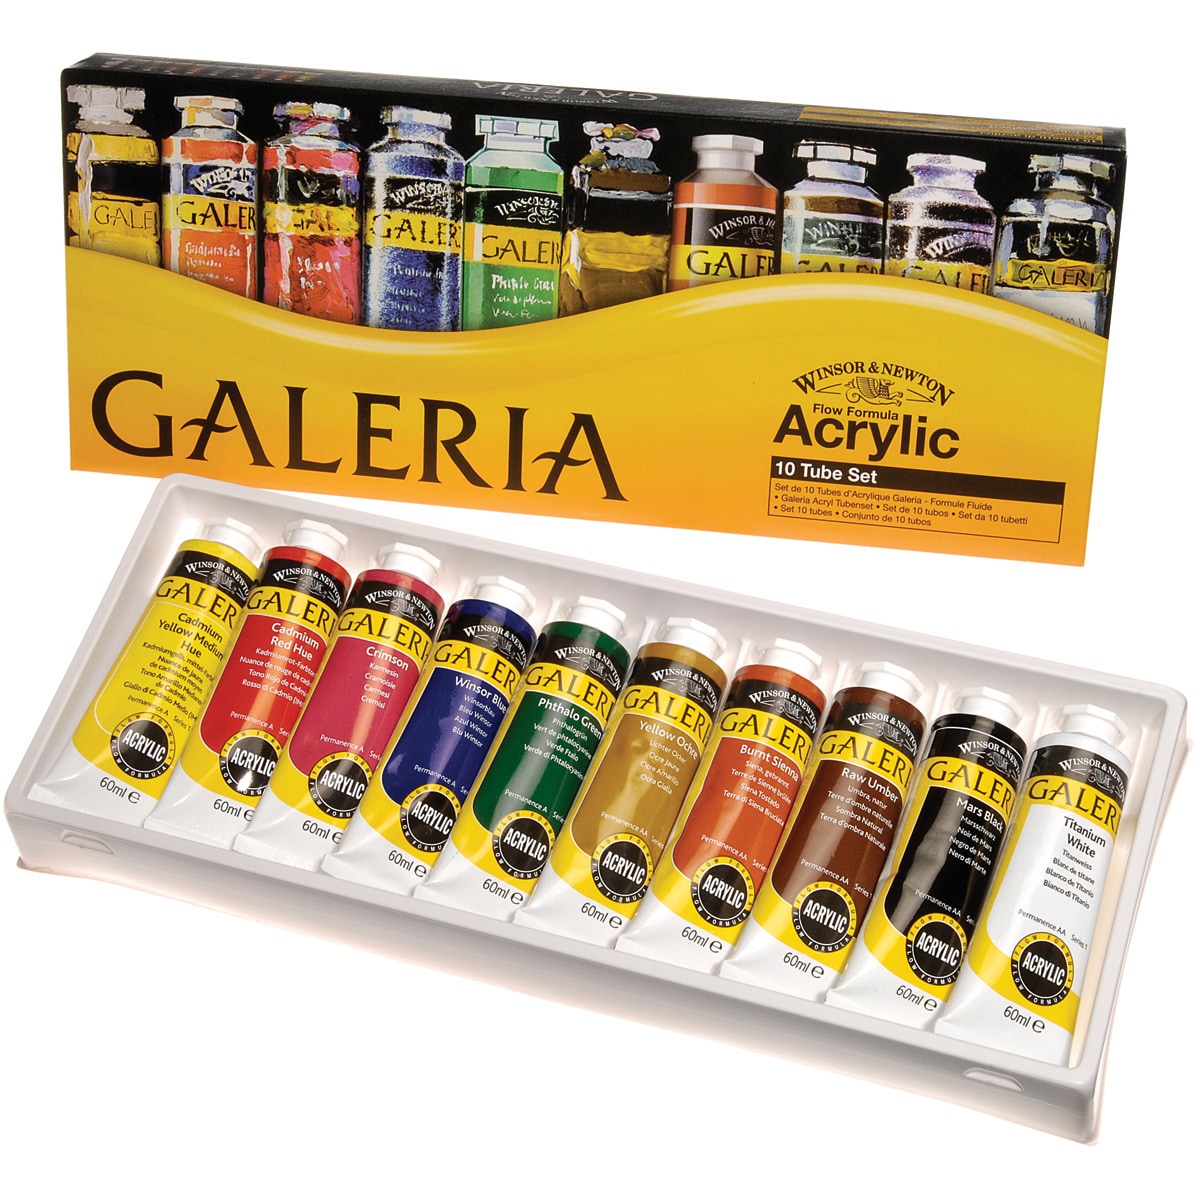 Basics Acrylic 24 color Paint Set   13021905   Shopping